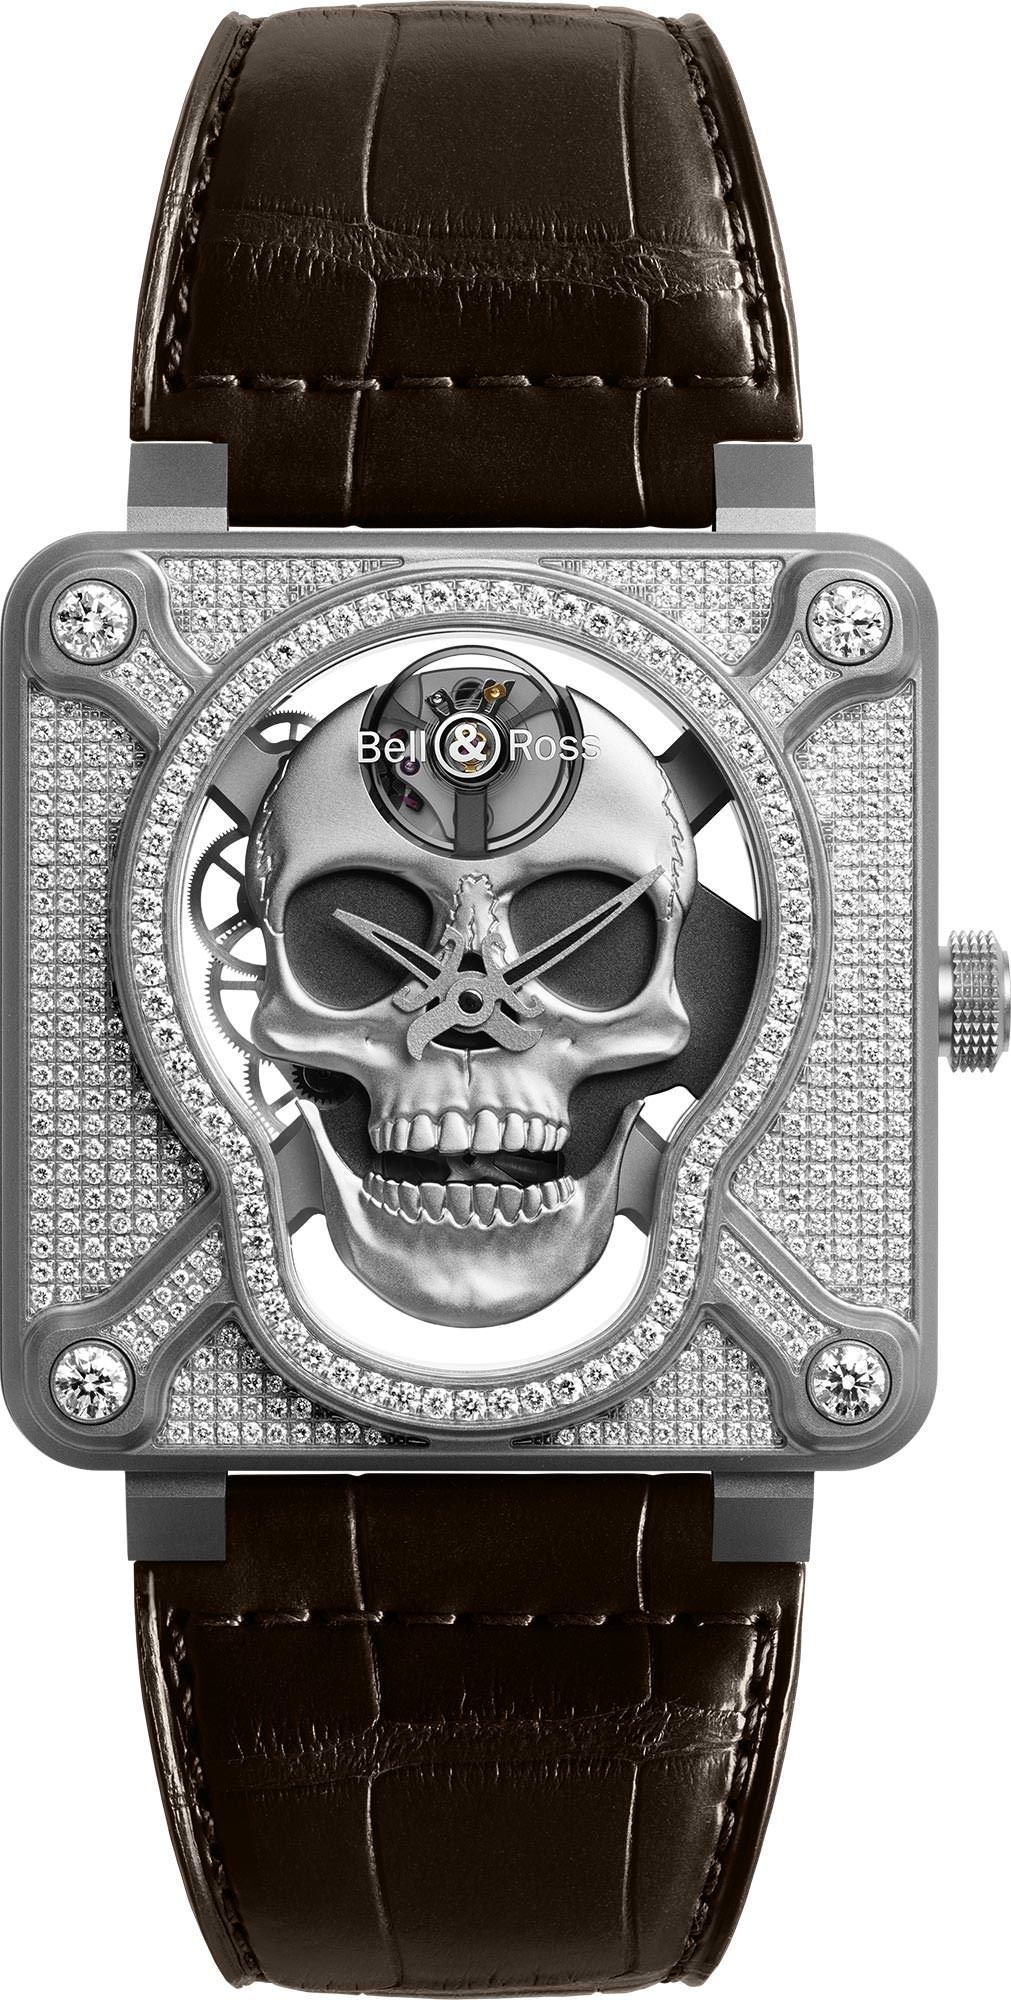 Bell & Ross Concept BR 01 Skull Skeleton Dial 46 mm Manual Winding Watch For Men - 1